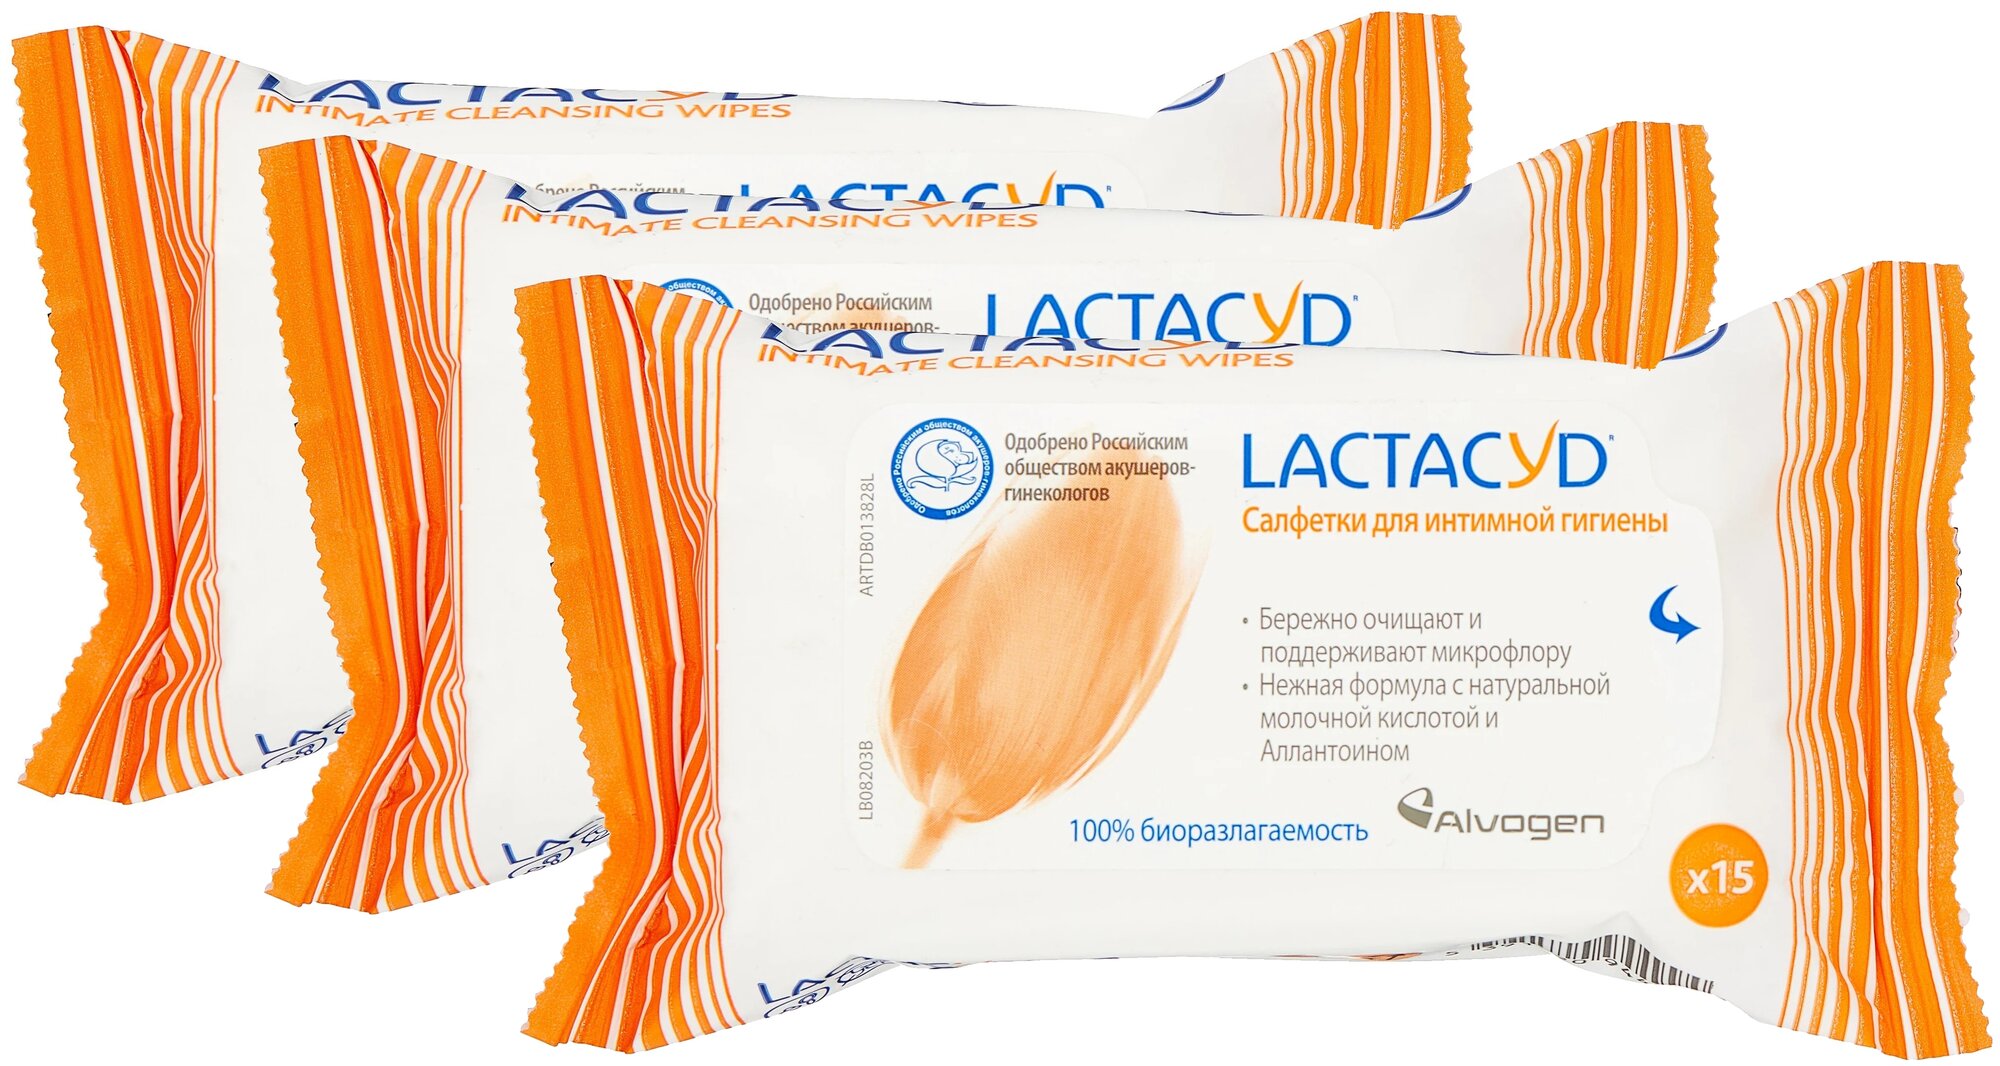 Lactacyd набор салфеток для интимной гигиены с молочной кислотой / интимные салфетки Лактацид 15шт, 3 упаковки